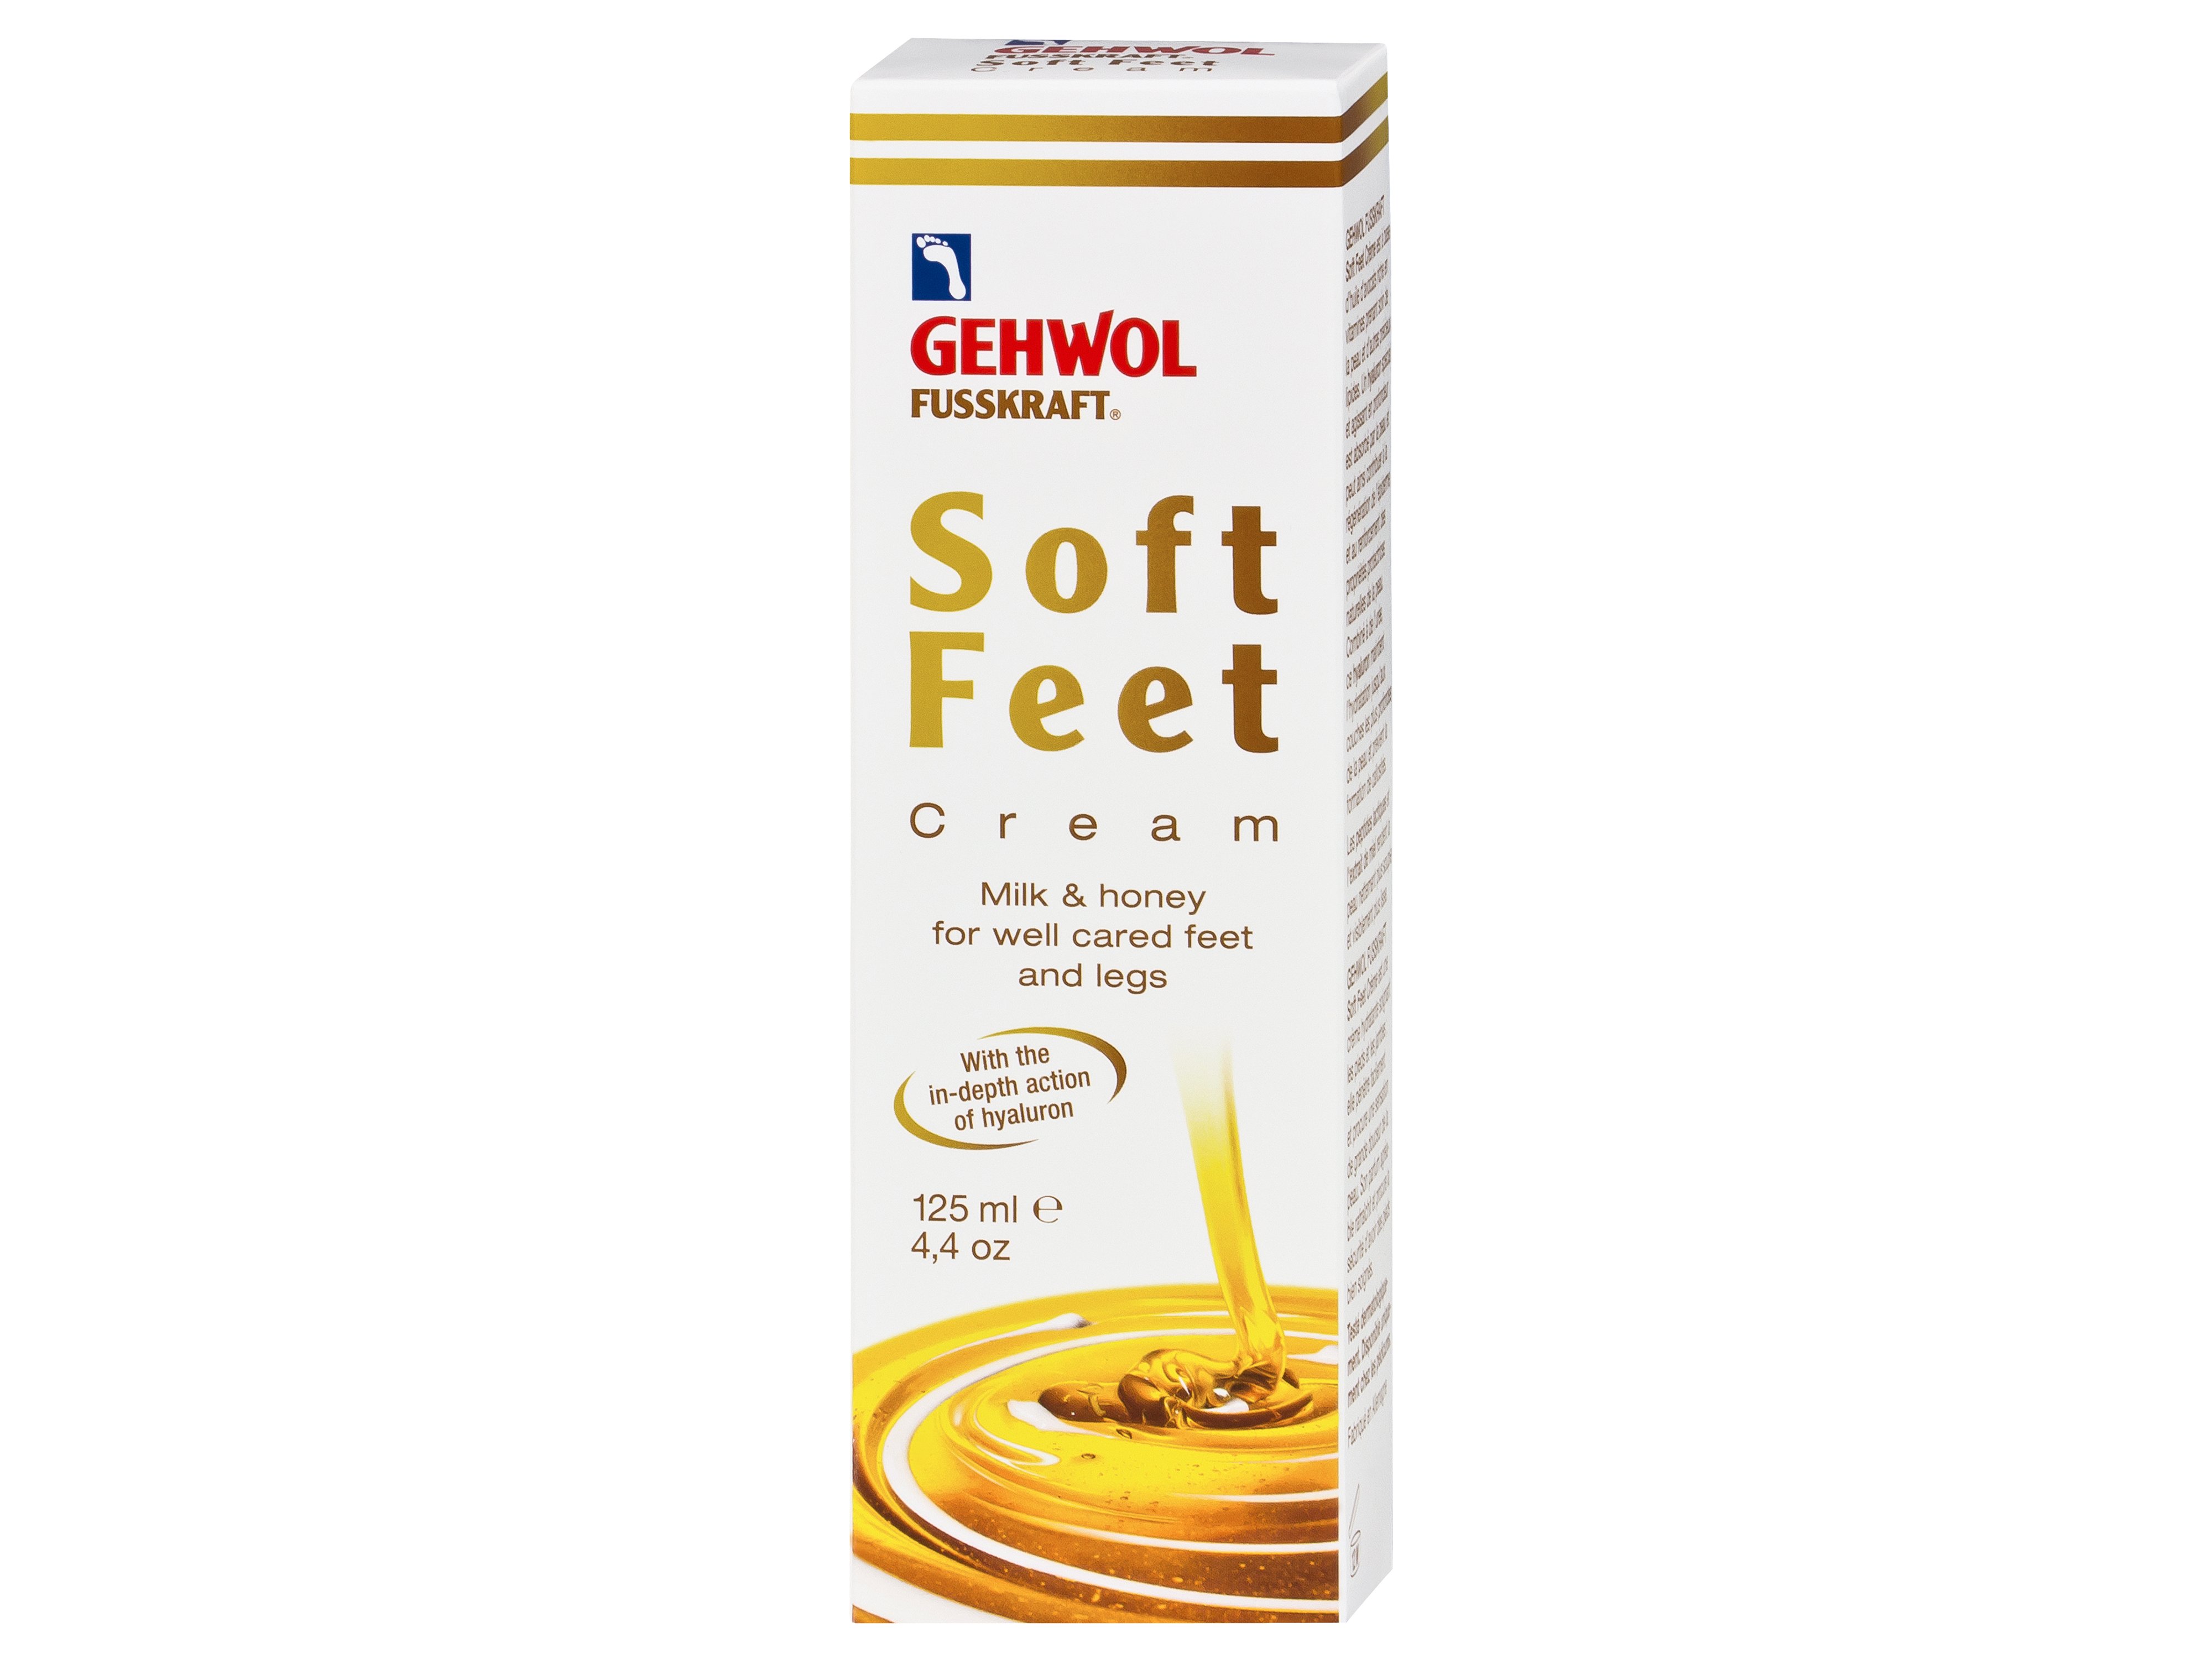 Gehwol Fusskraft Soft Feet Cream, 125 ml